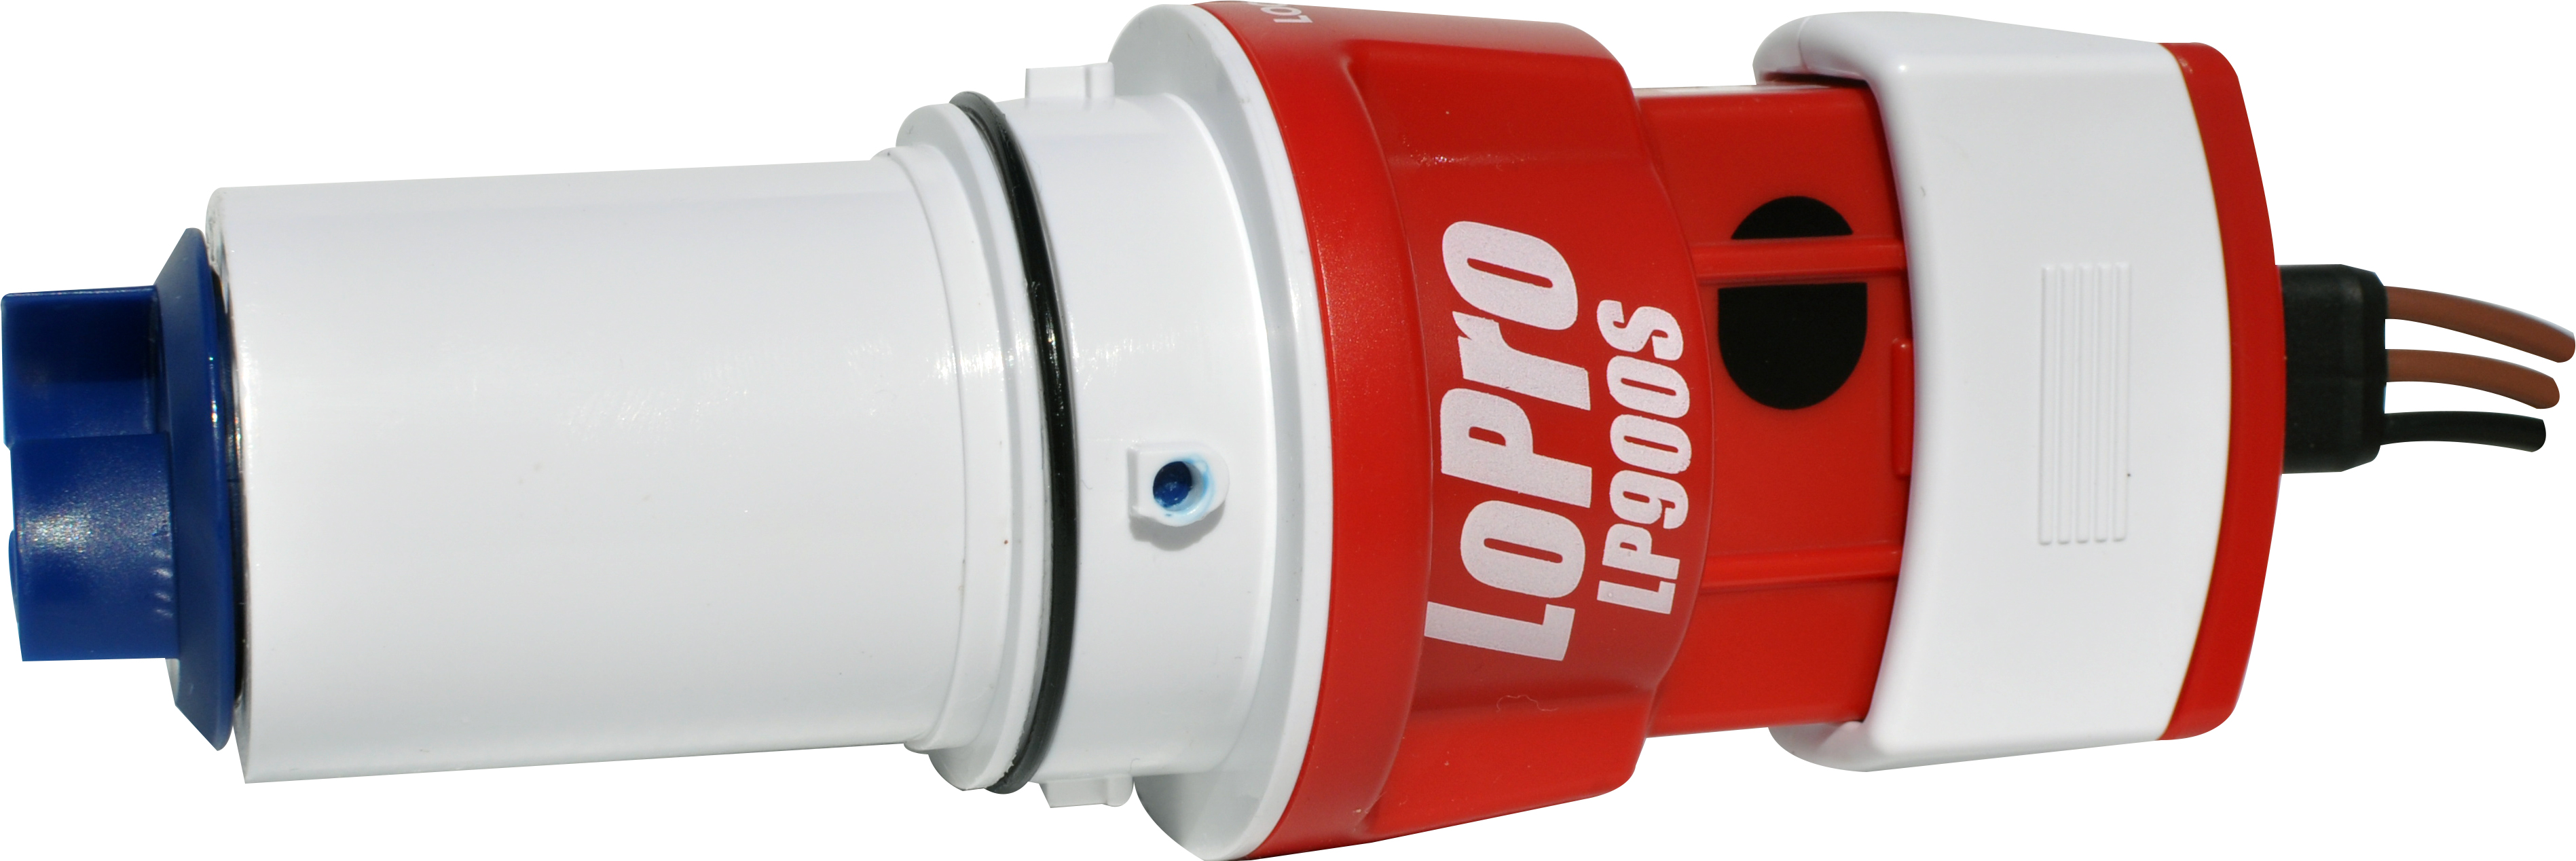 Rule LP900S - Rule LoPro Submersible Pump / Rule Bilge Pumps